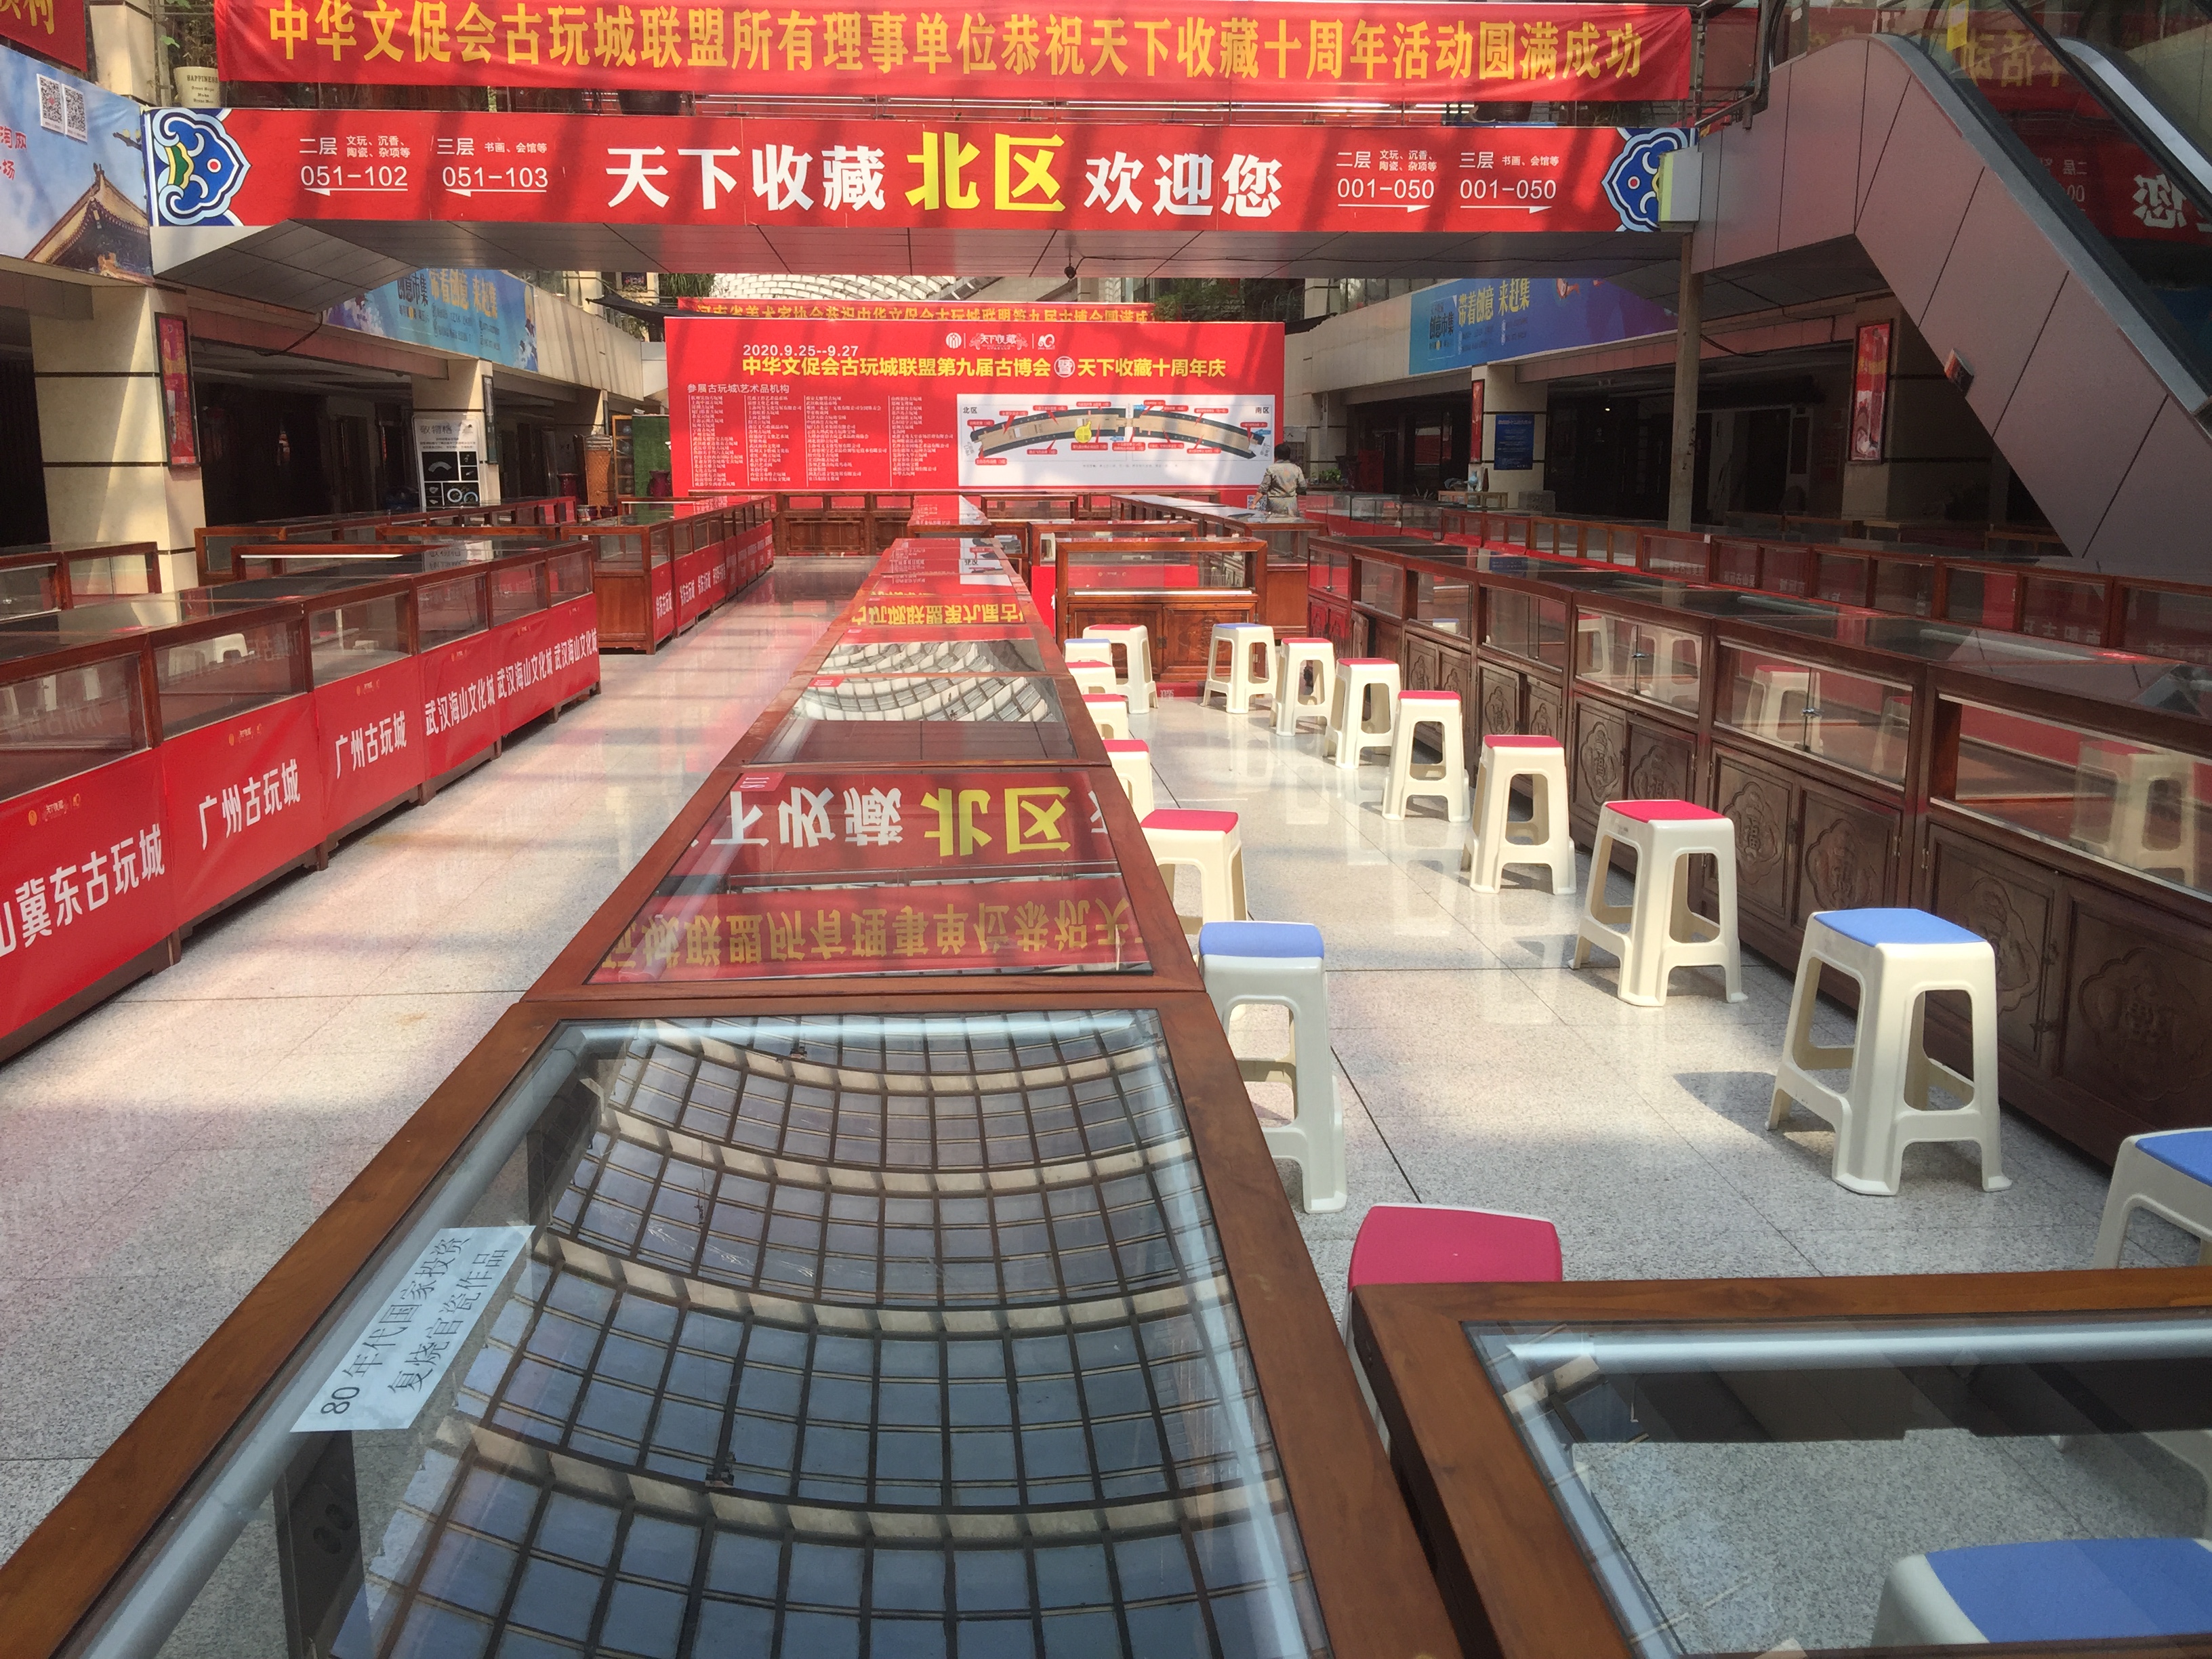 古博会,多项大展将在郑州同时开幕  ——共庆天下收藏文化街10周年